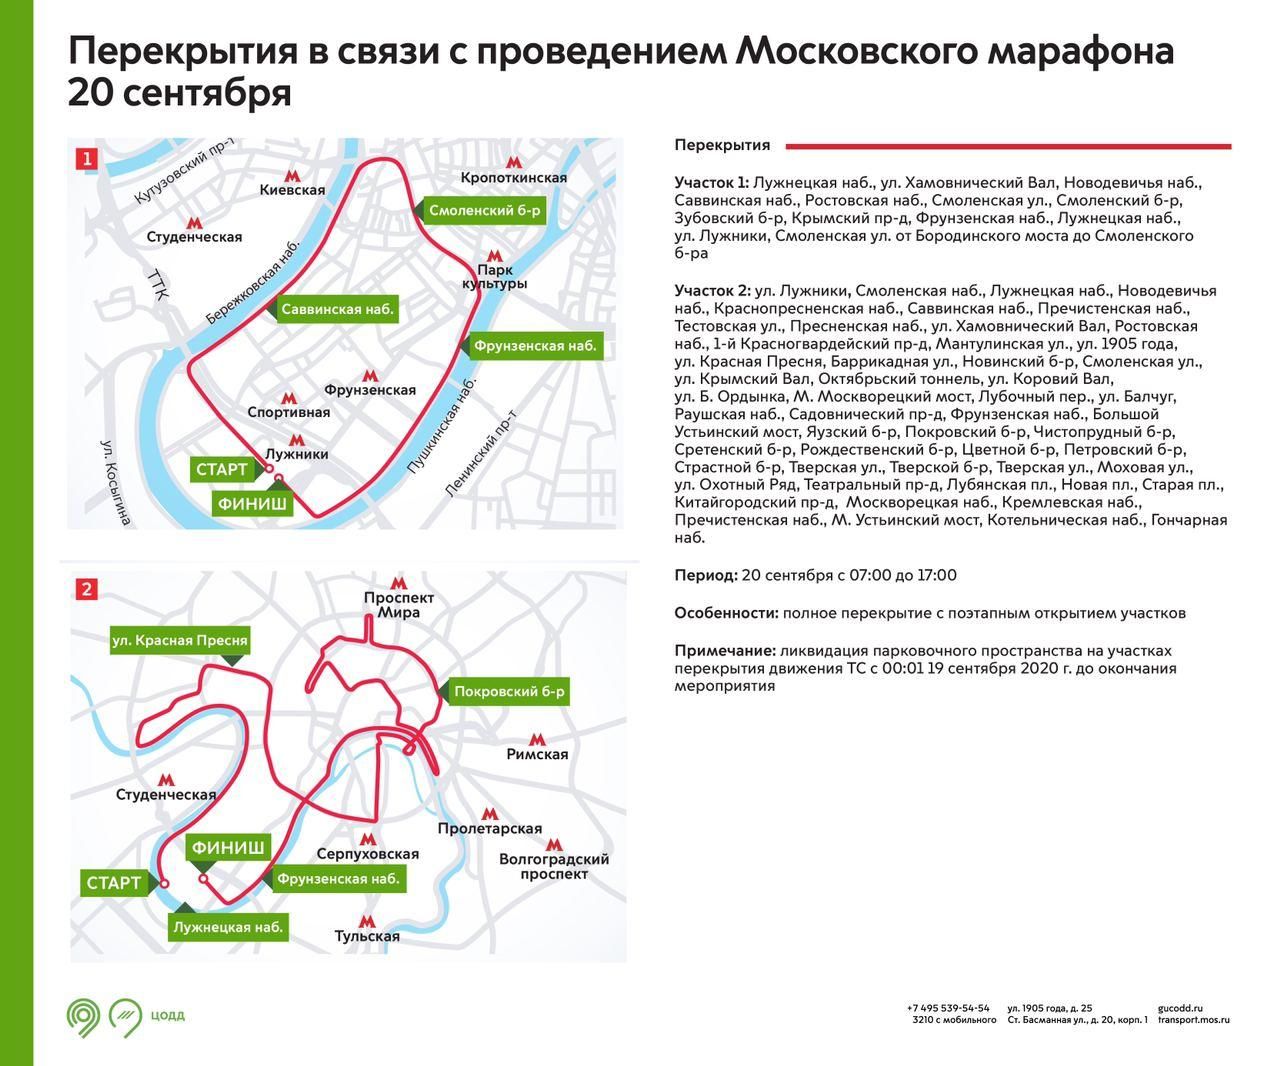 Центр столицы перекрыли из-за Московского марафона. Ограничения действуют с 7 утра до 17 часов.

Так...